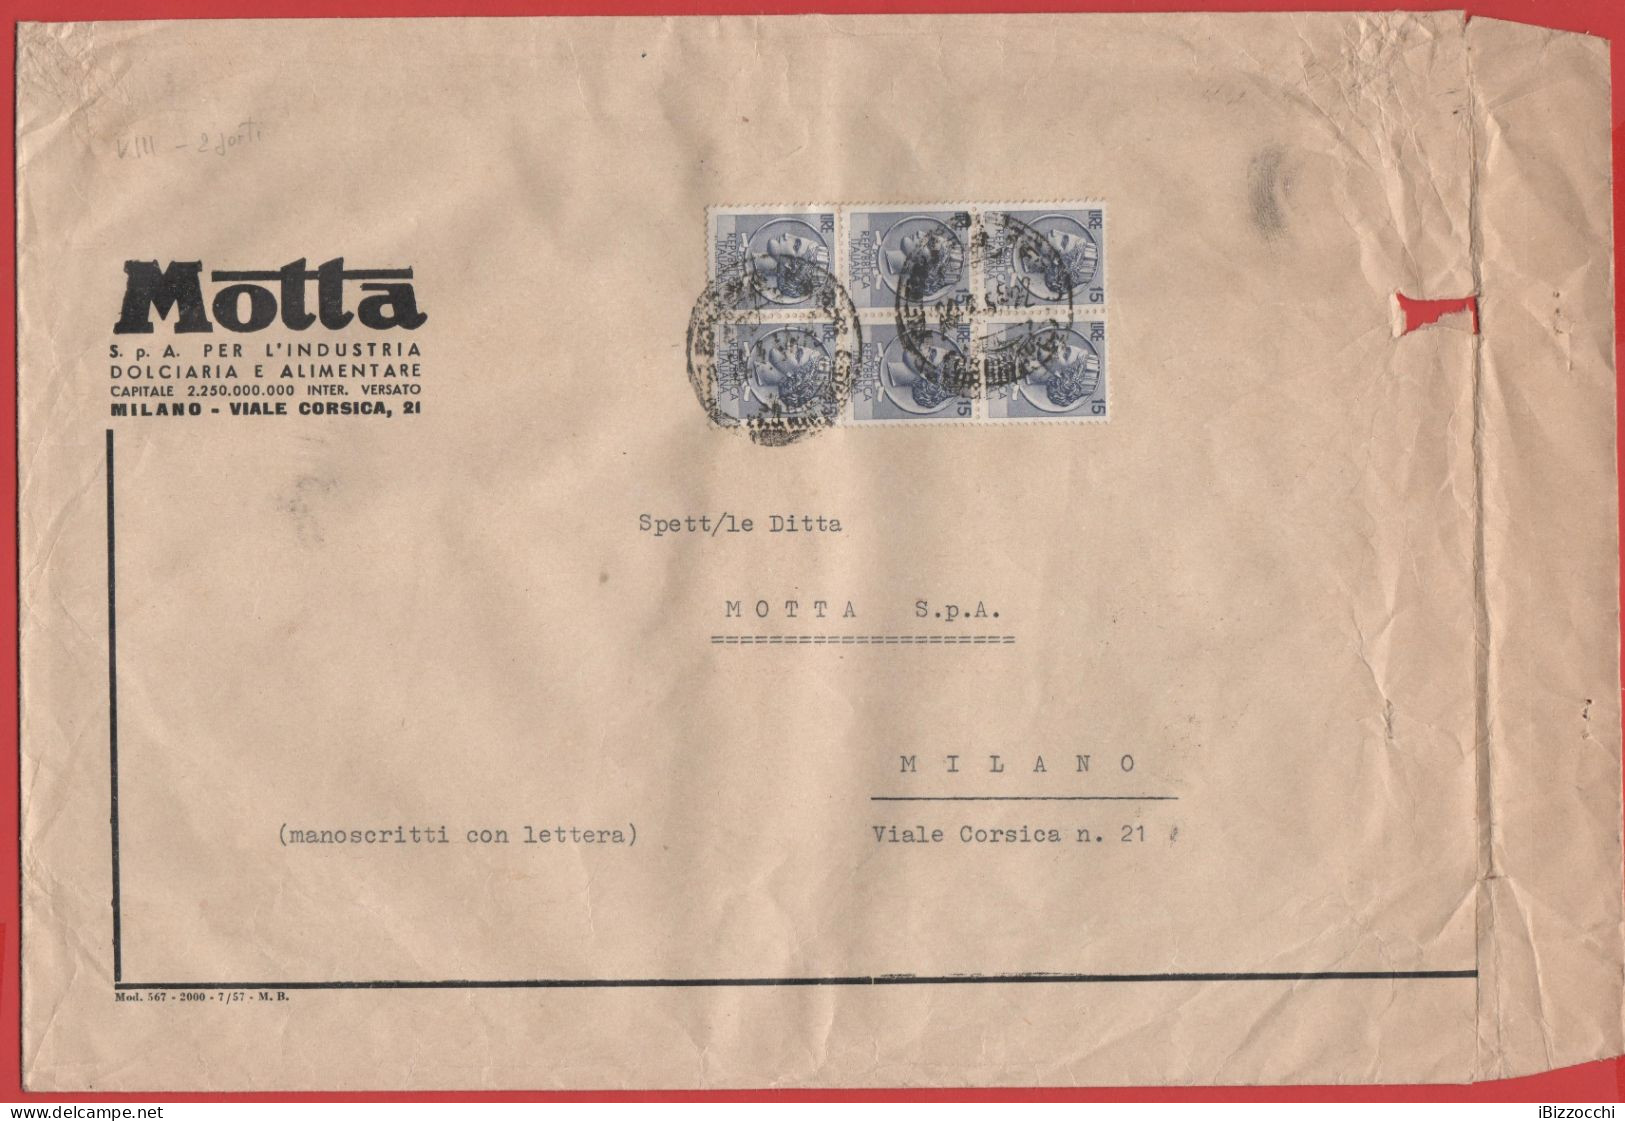 ITALIA - Storia Postale Repubblica - 1957 -  6x 15 Antica Moneta Siracusana - Busta Di Grande Formato - Motta  - Viaggia - 1946-60: Storia Postale